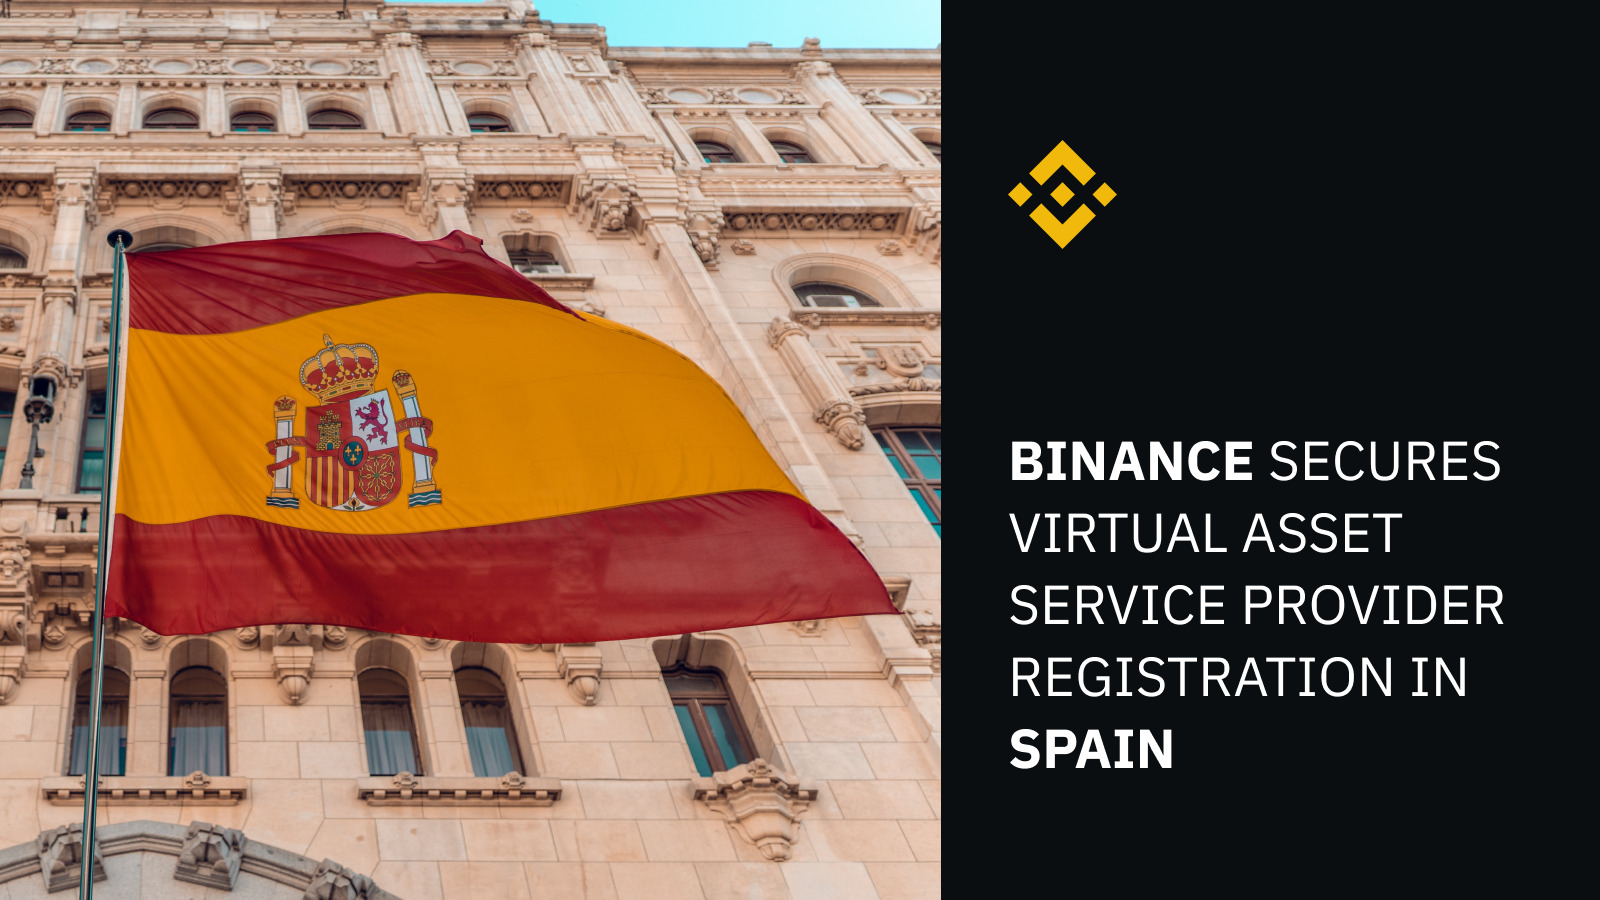 Công ty con của Binance được cấp phép cung cấp dịch vụ tiền mã hóa tại Tây Ban Nha